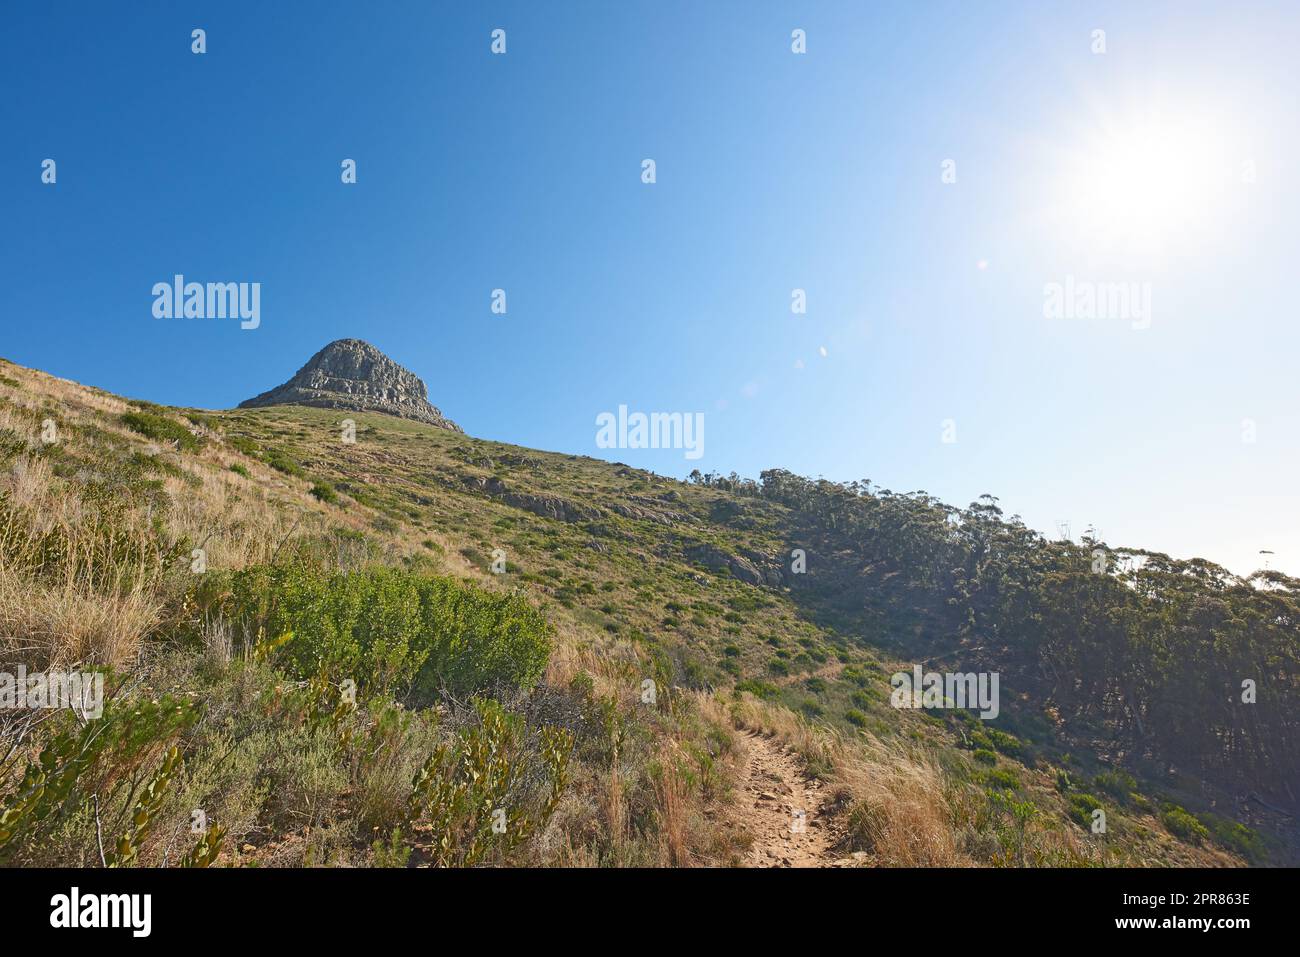 Landschaftsblick auf den Lions Head Mountain, blauer Himmel mit Kopierbereich auf dem Tafelberg, Kapstadt, Südafrika. Ruhige, ruhige, ländliche Landschaft und entspannende Naturlandschaft. Wildes Reiseziel Stockfoto